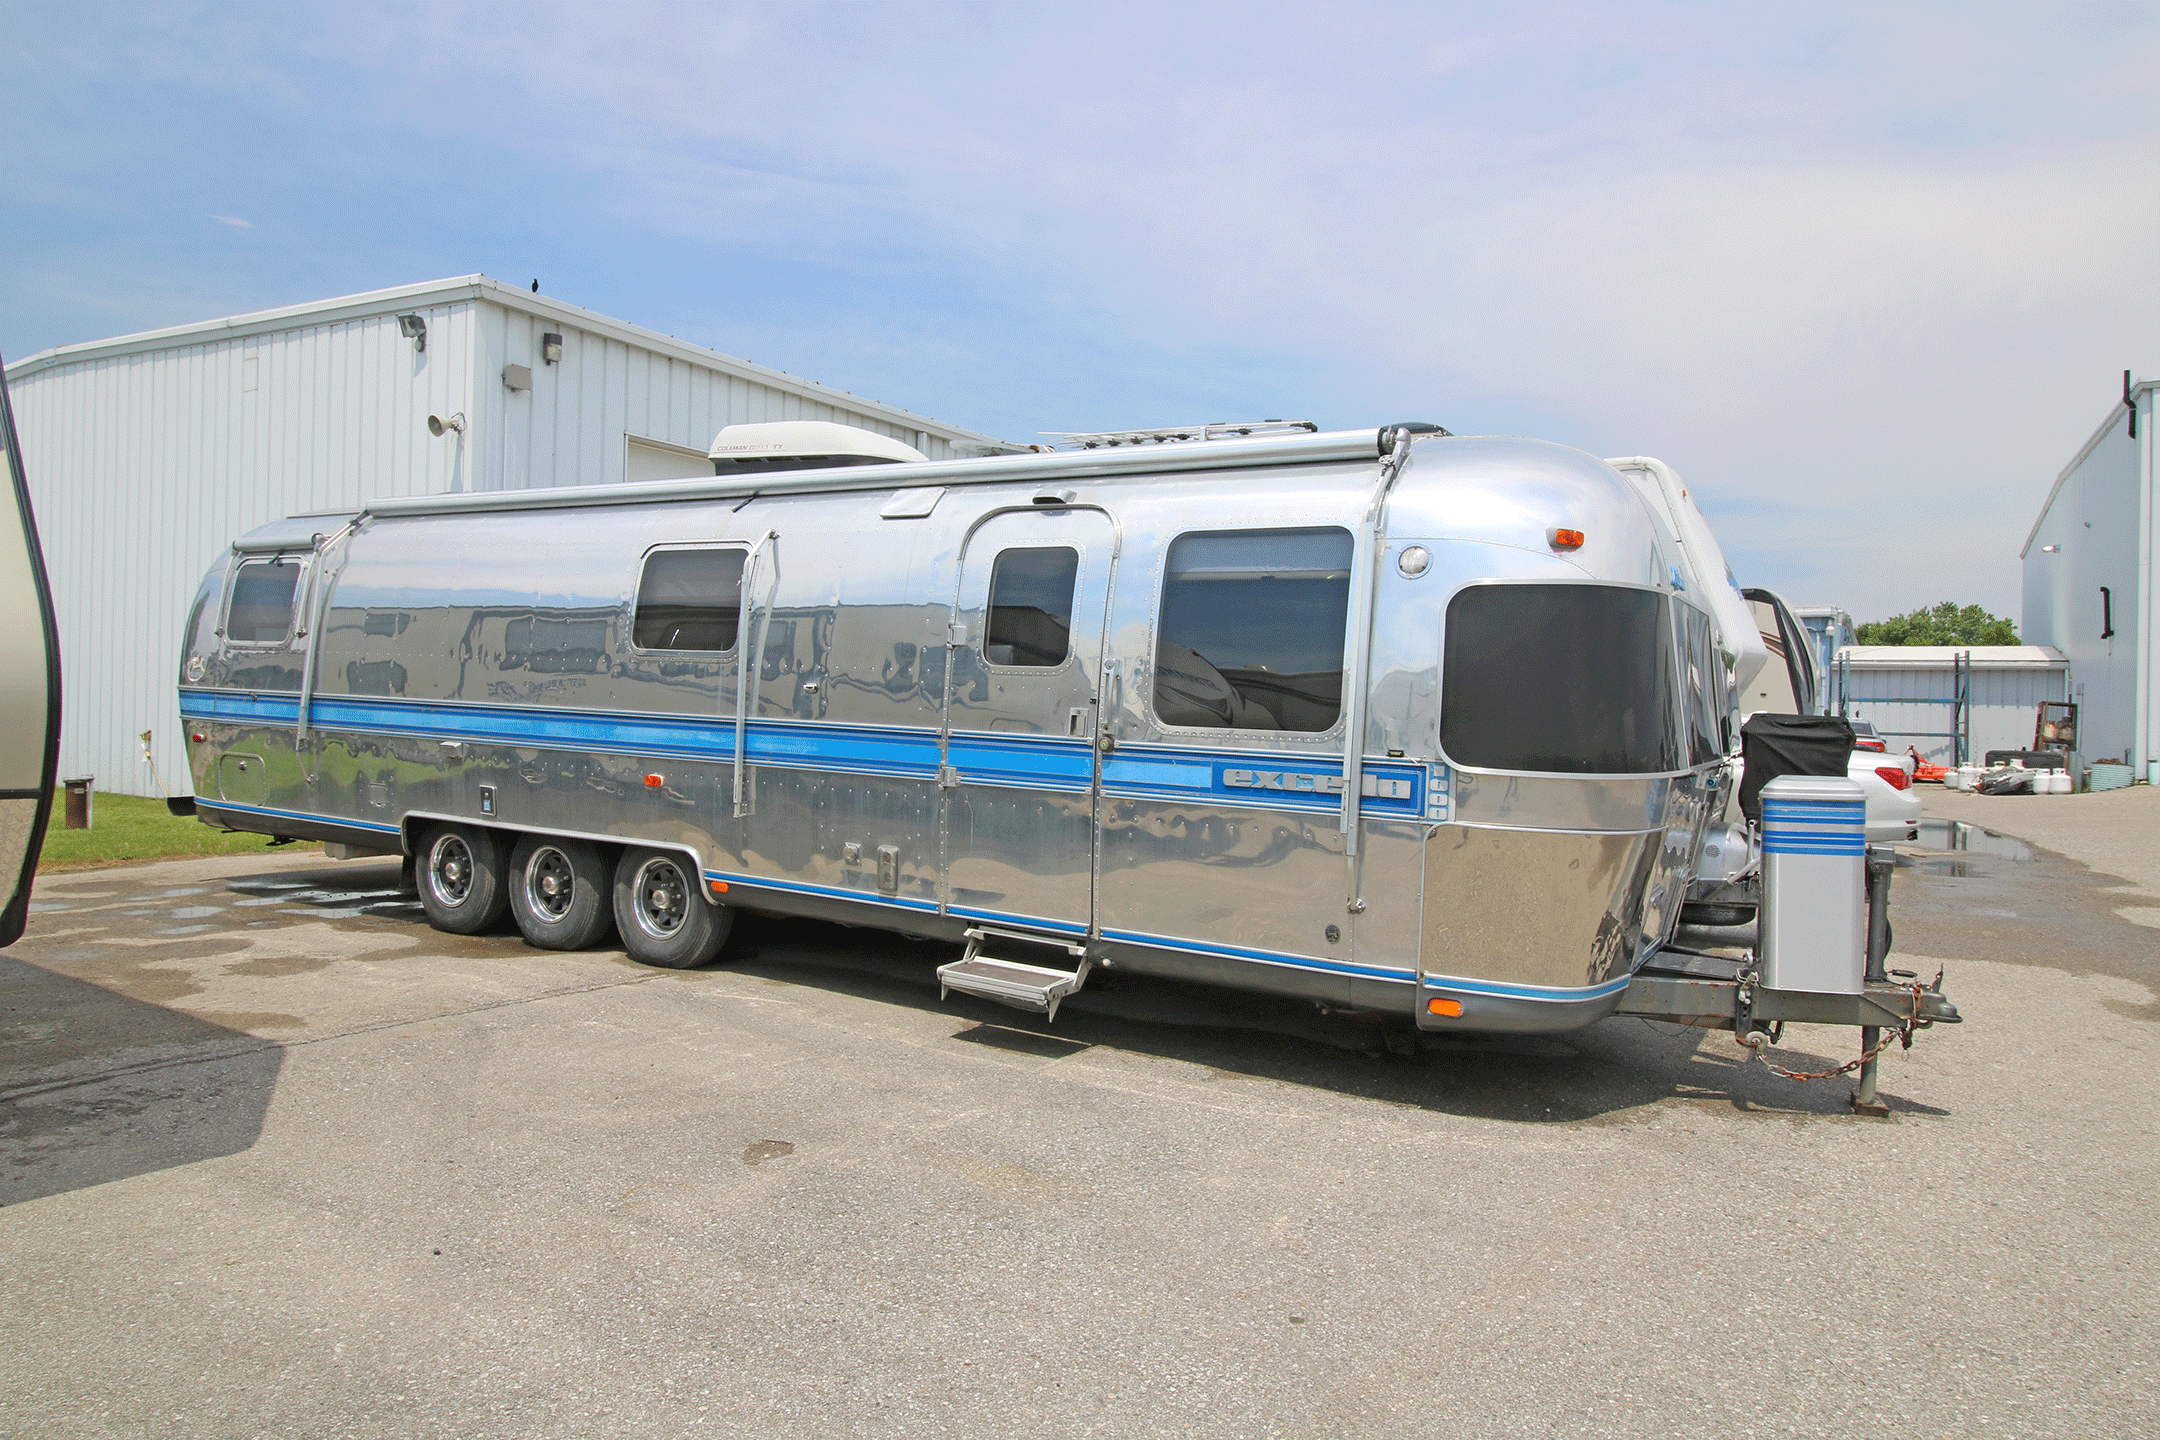 34 ft travel trailer